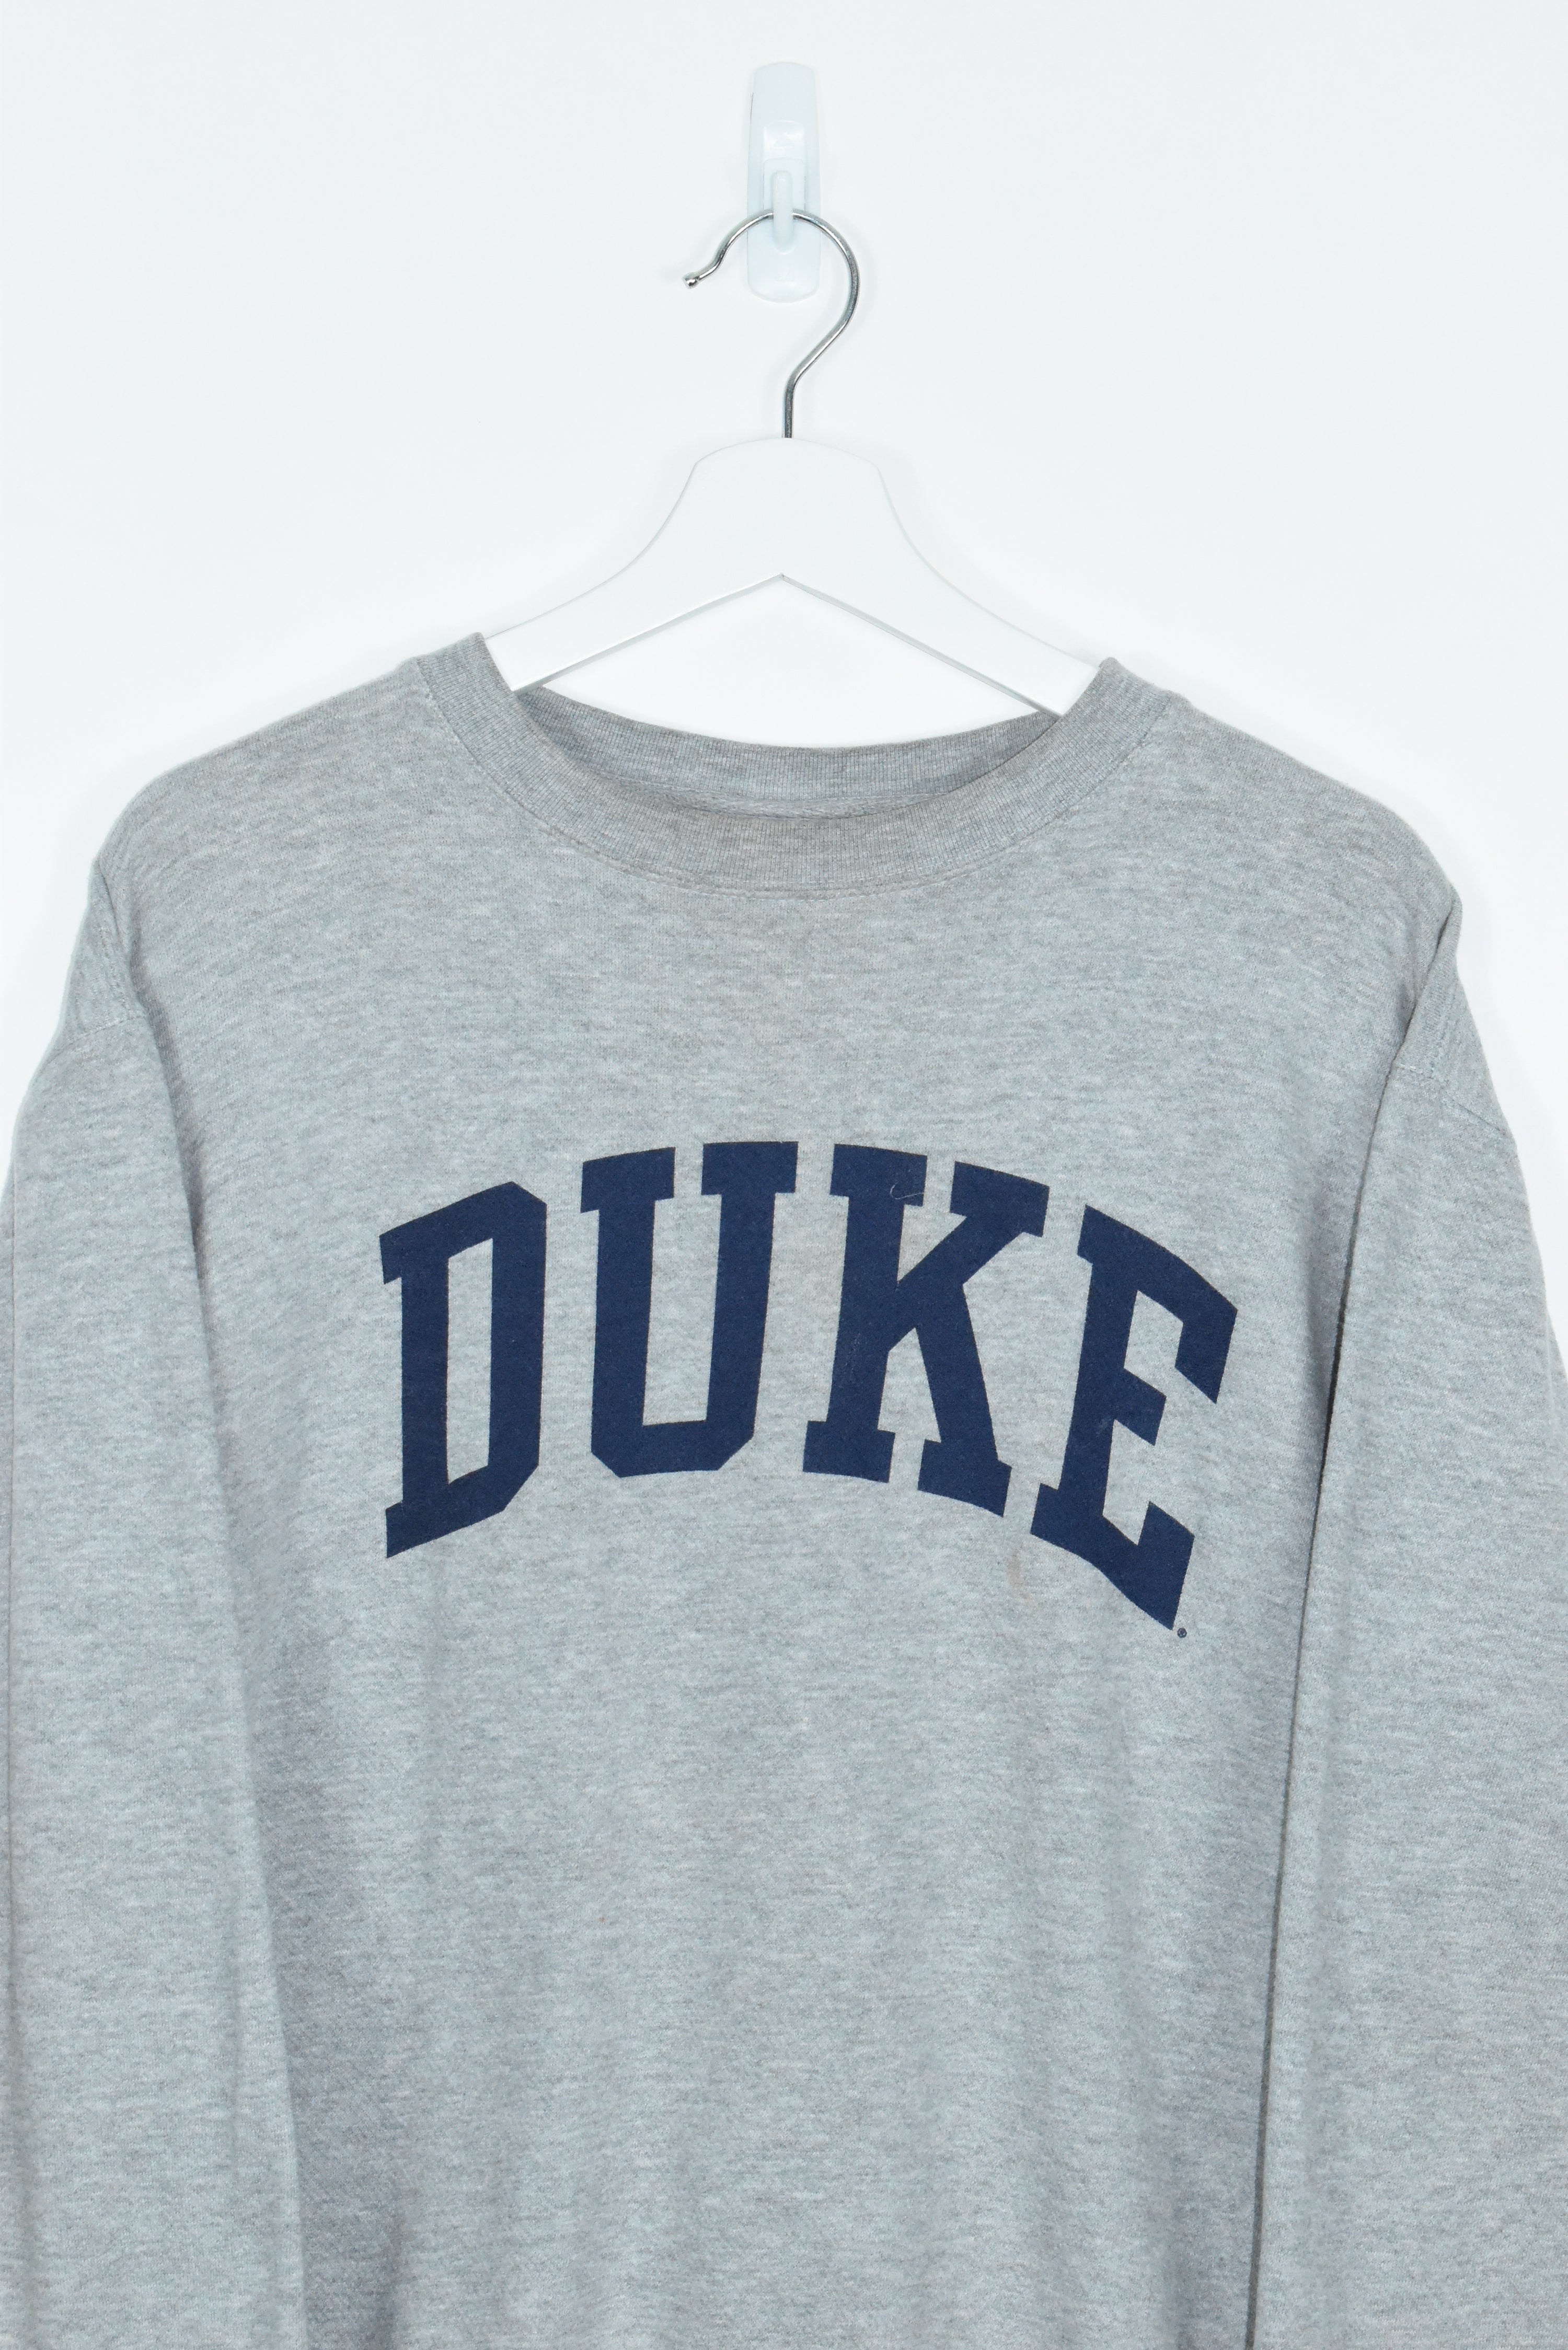 Vintage Duke Spellout Sweatshirt Medium / Large